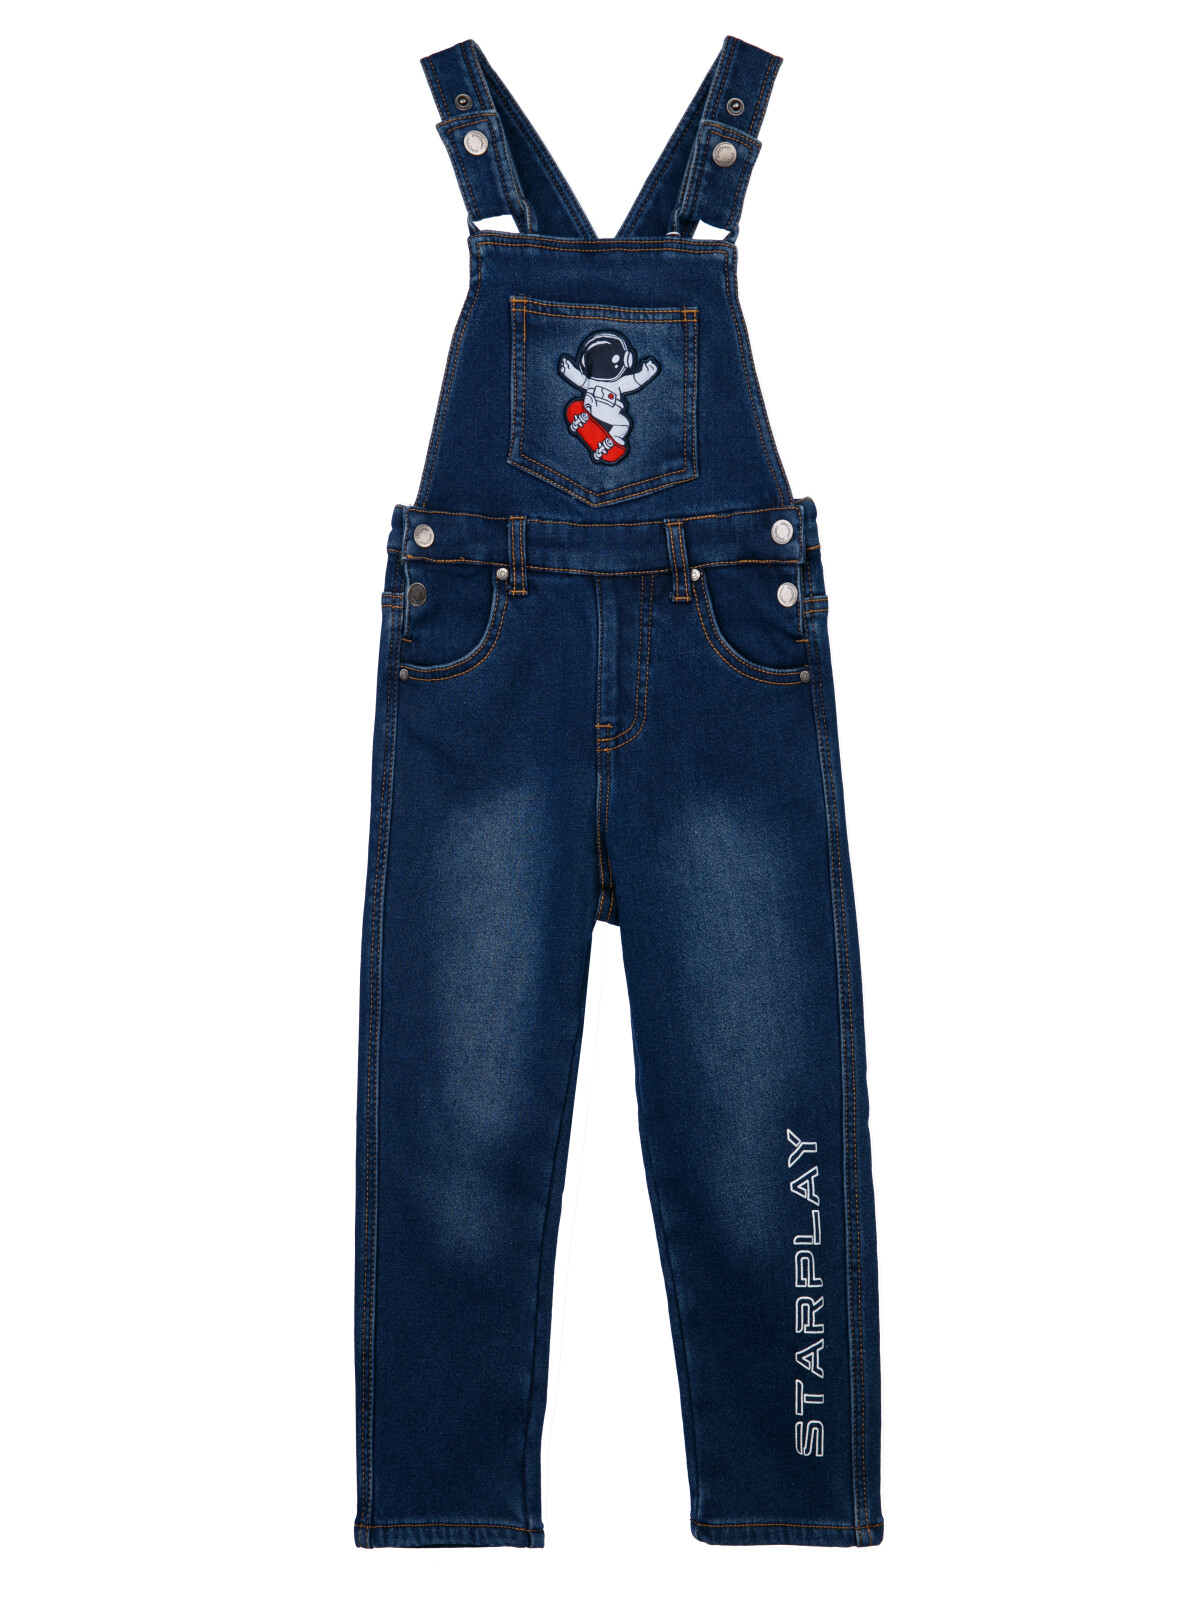 Полукомбинезон текстильный джинсовый утепленный флисом для мальчиков PlayToday, синий, 98 oshkosh b gosh полукомбинезон джинсовый k320112